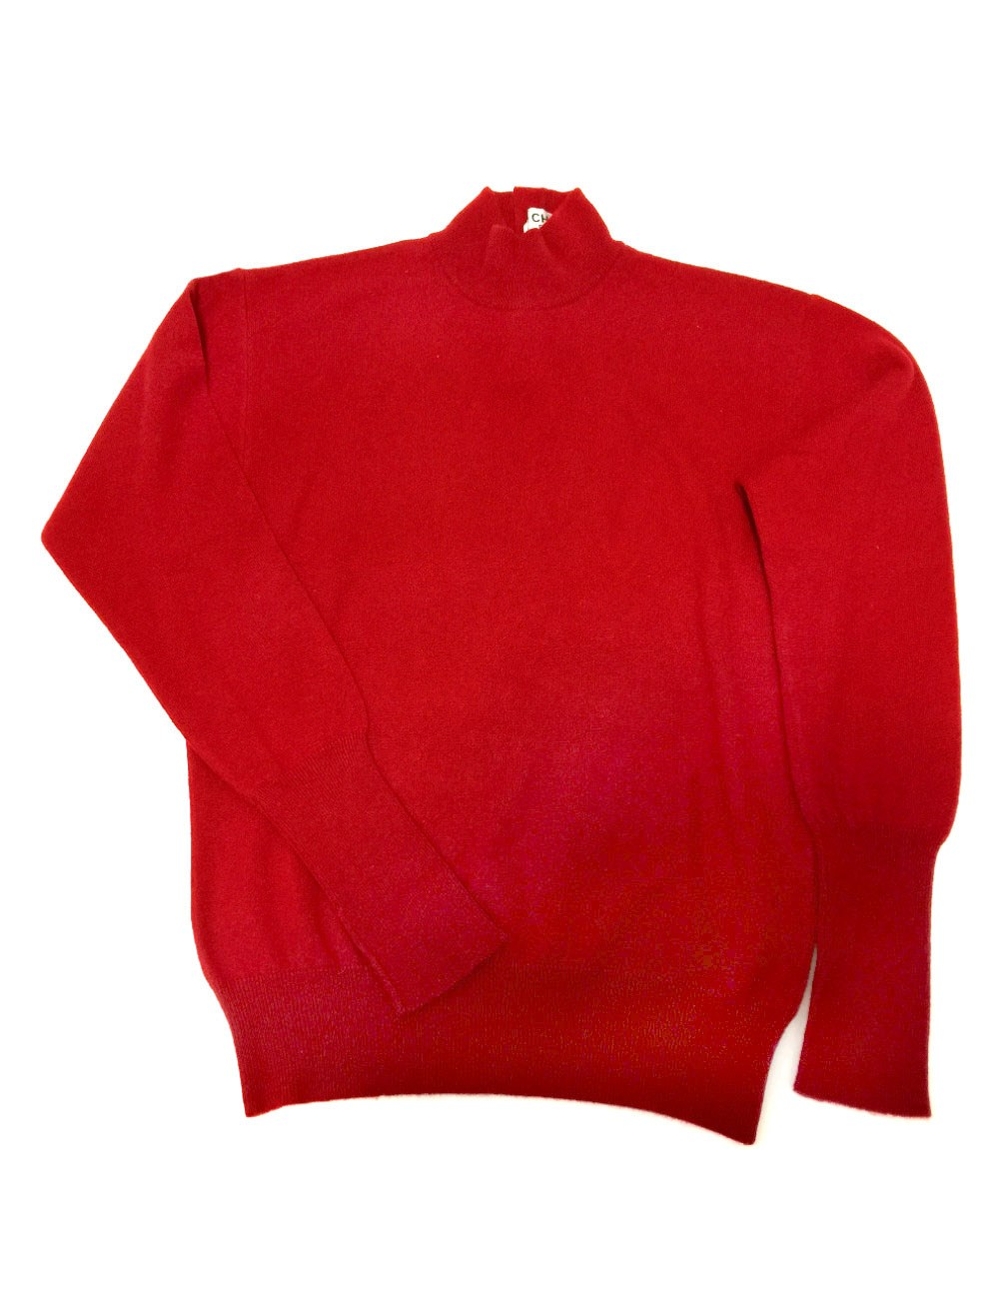 實體商品編號：K00222271 產品名稱：CHANEL CHANEL BOUTIQUE C-TK-5914長袖高領可可鈕扣毛衣 型號。： - 紅色 尺寸（約）： 尺寸說明：40 肩寬：45cm 衣長